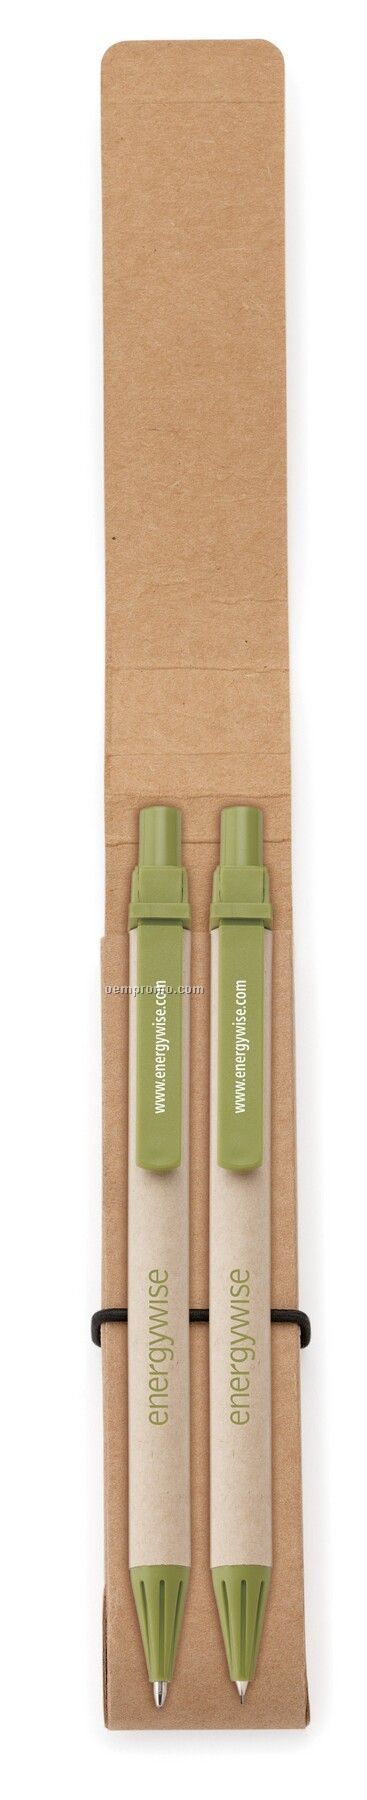 Ecologist Pen & Pencil Set